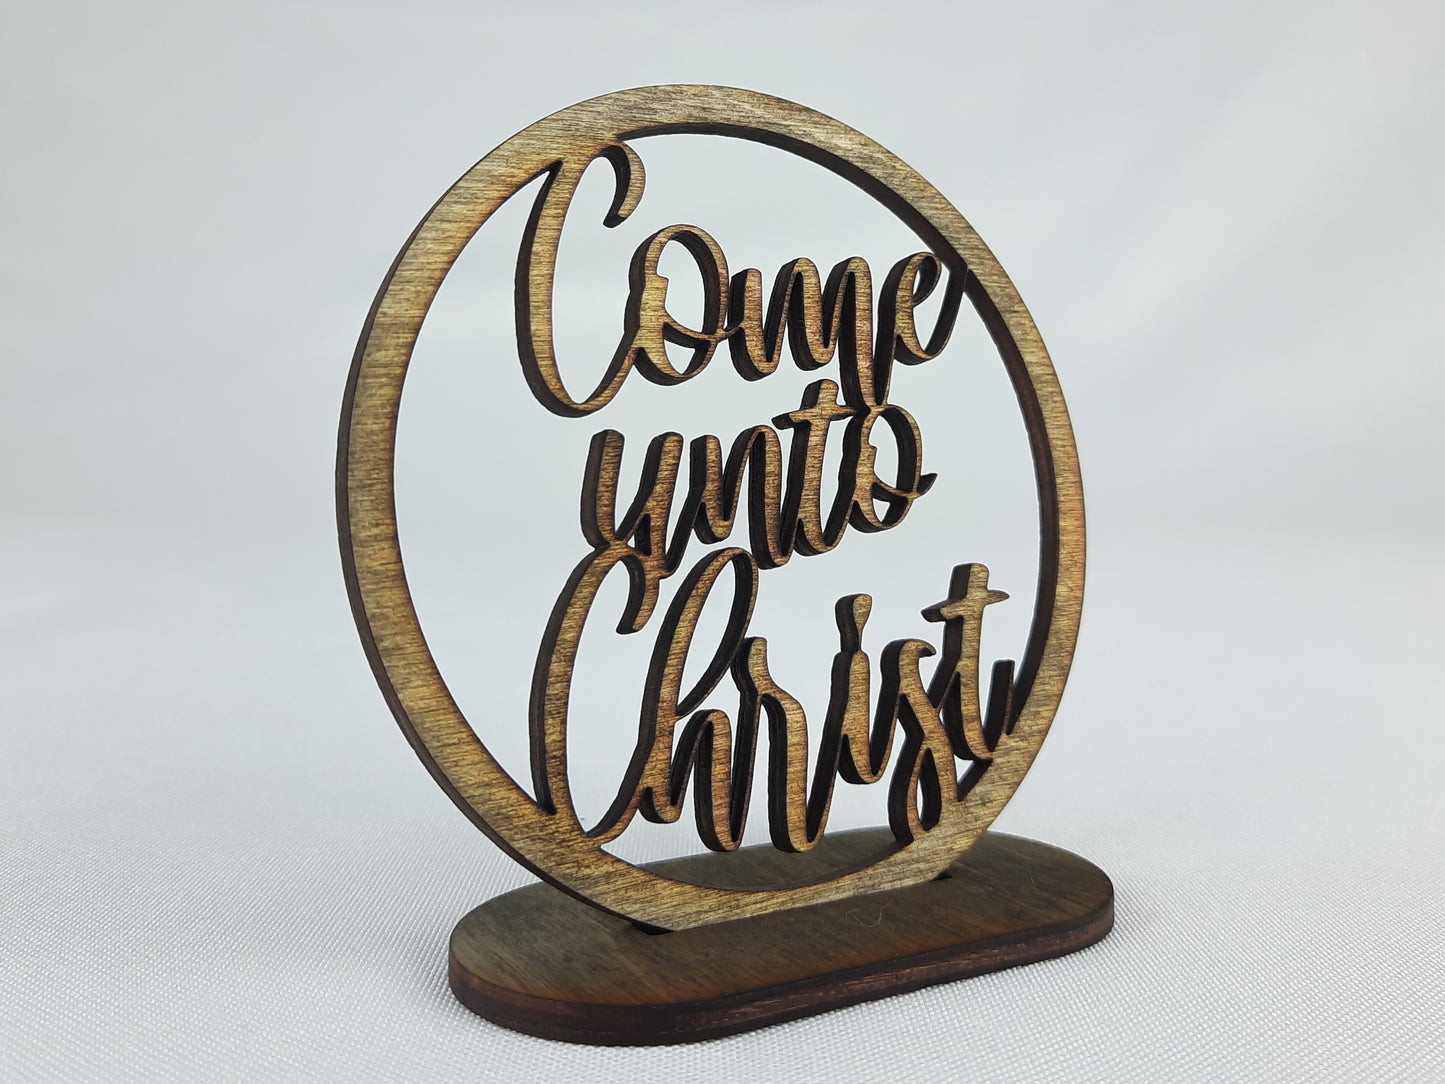 "Come Unto Christ" Ornament